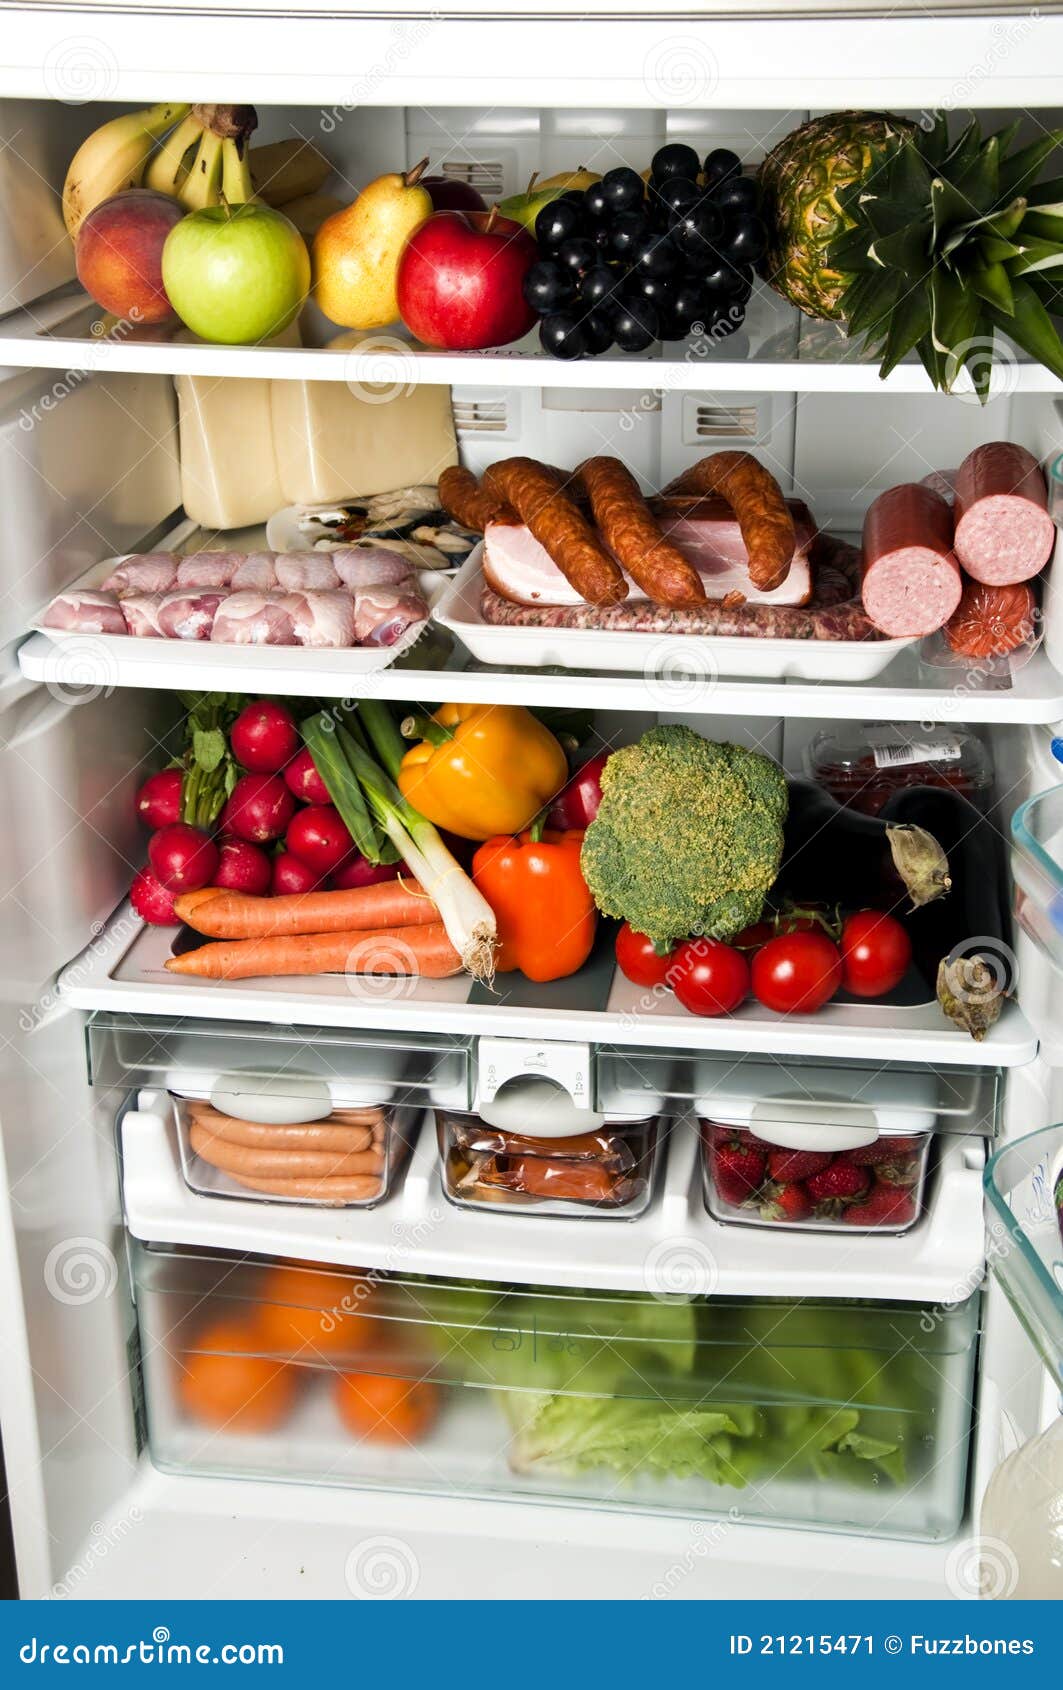 冰箱放在什么位置散热好—冰箱如果摆放散热好 - 舒适100网